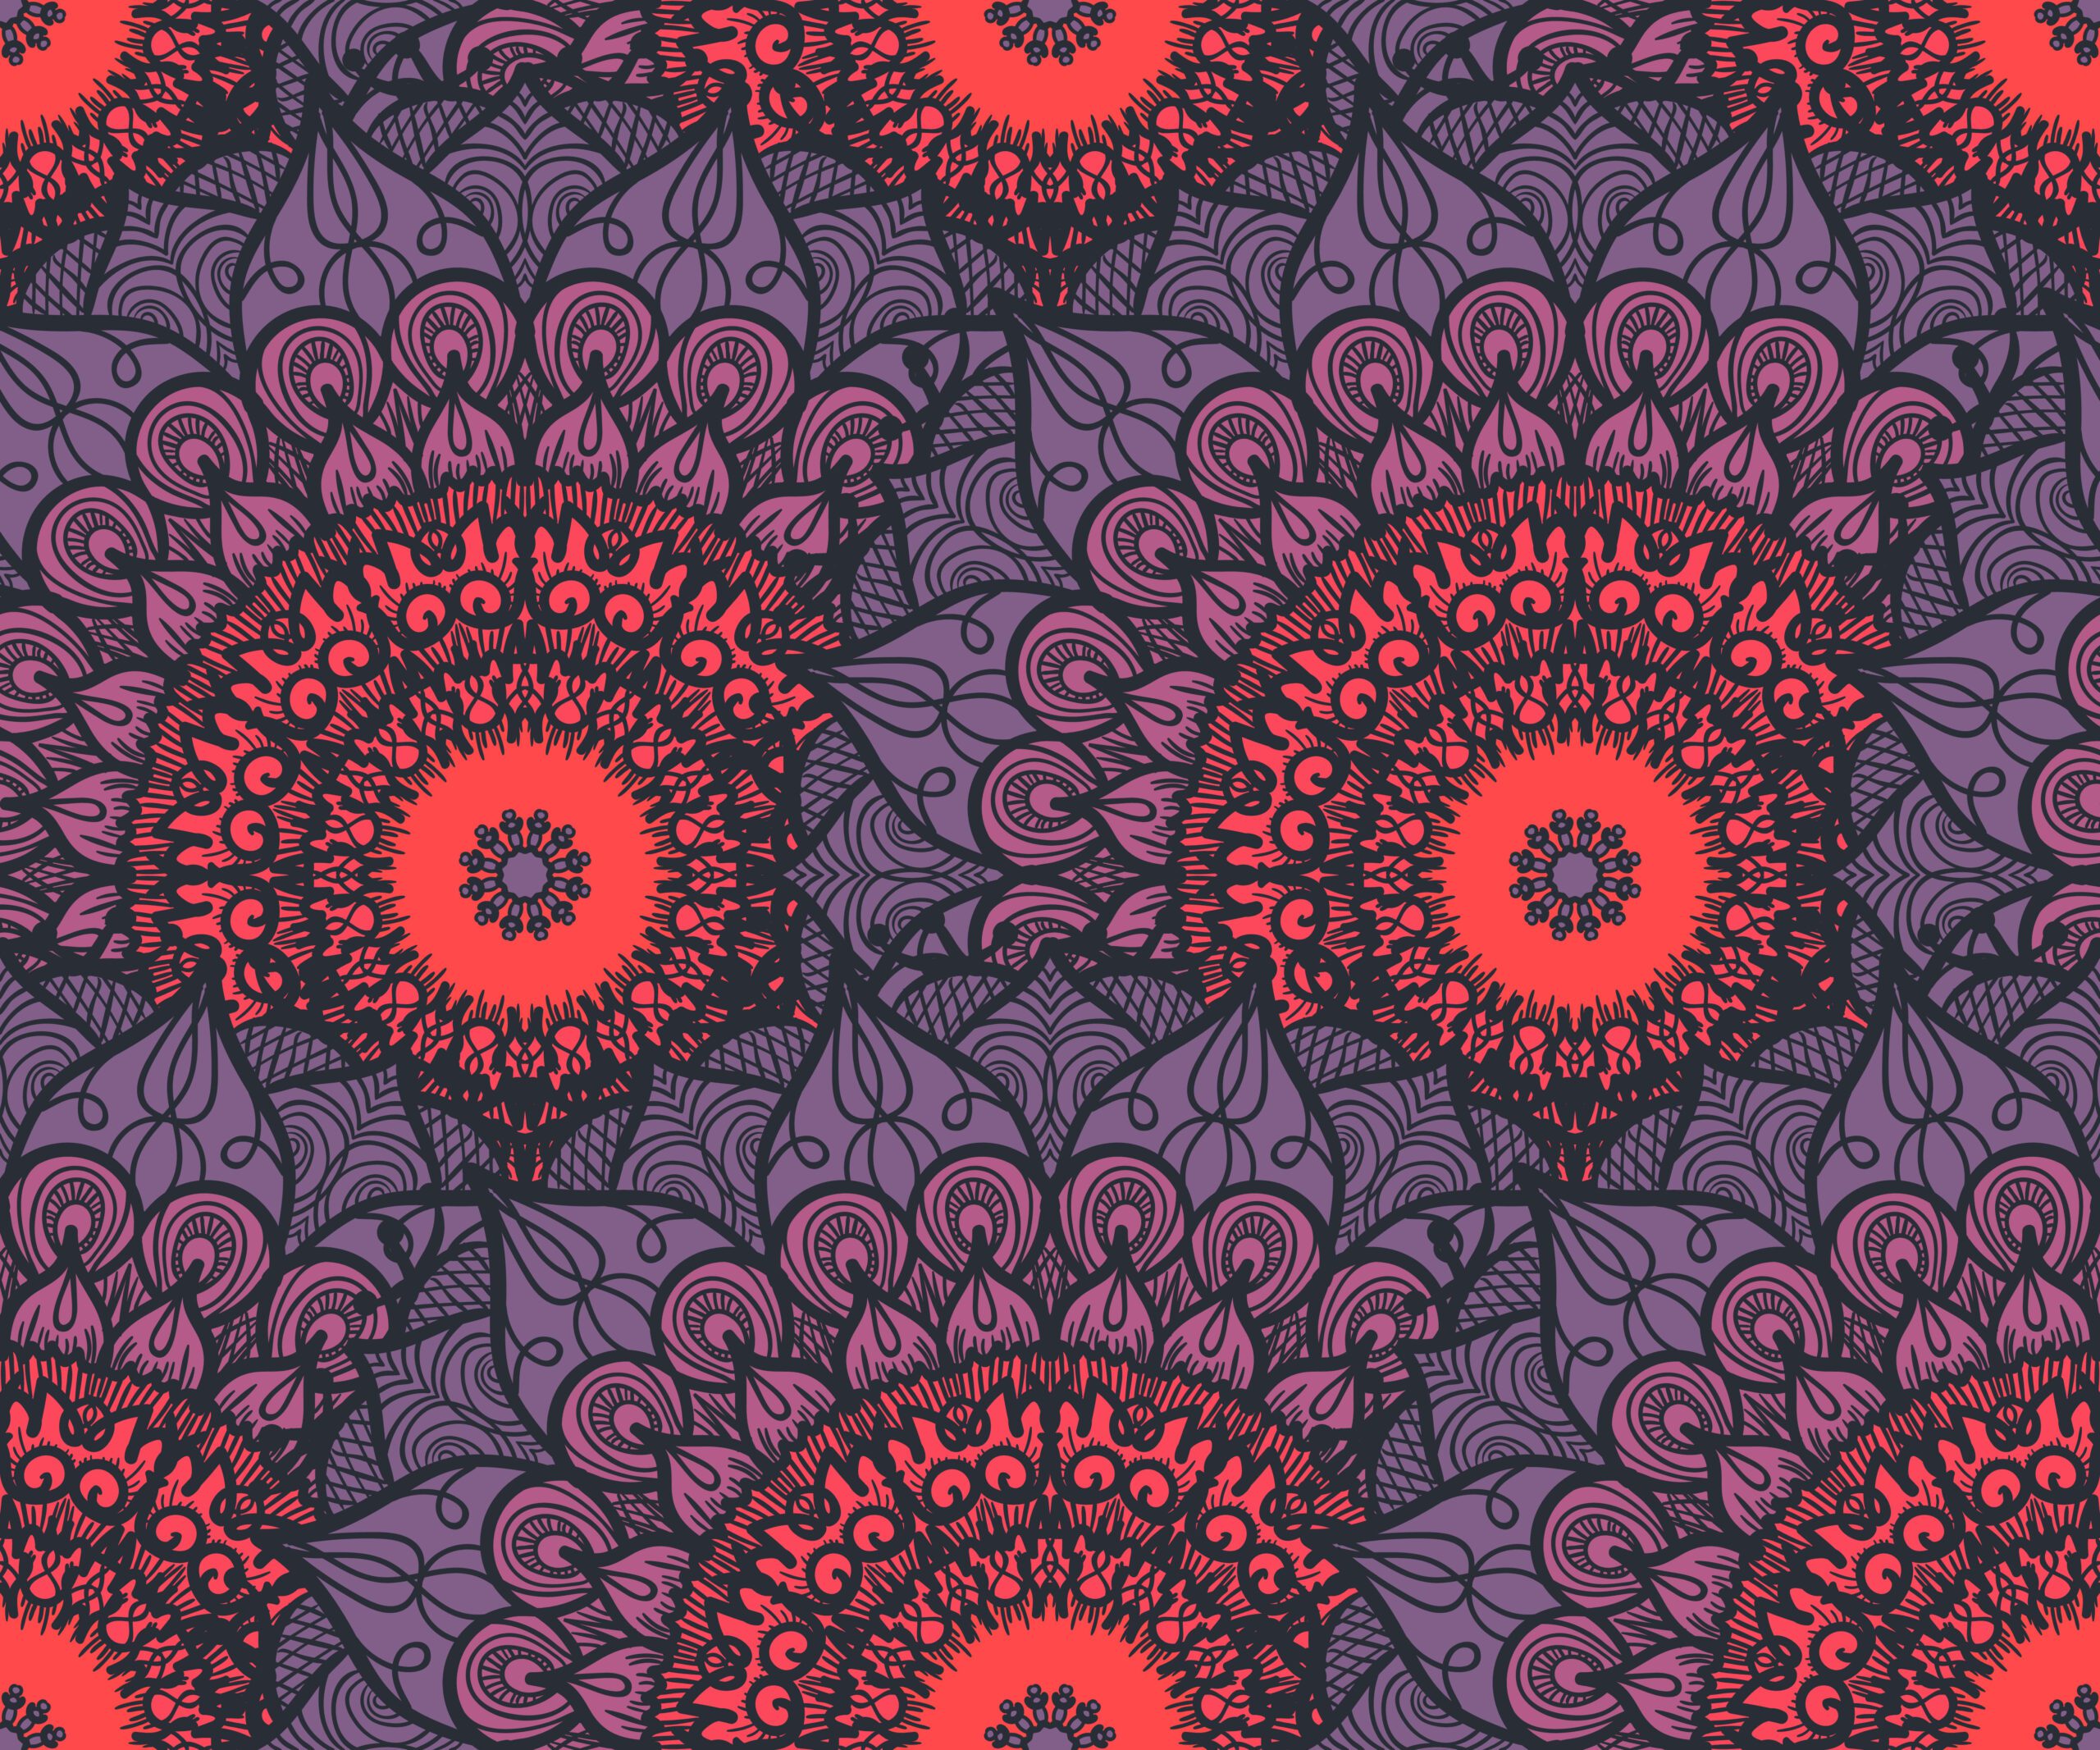 Colourful mandala pattern